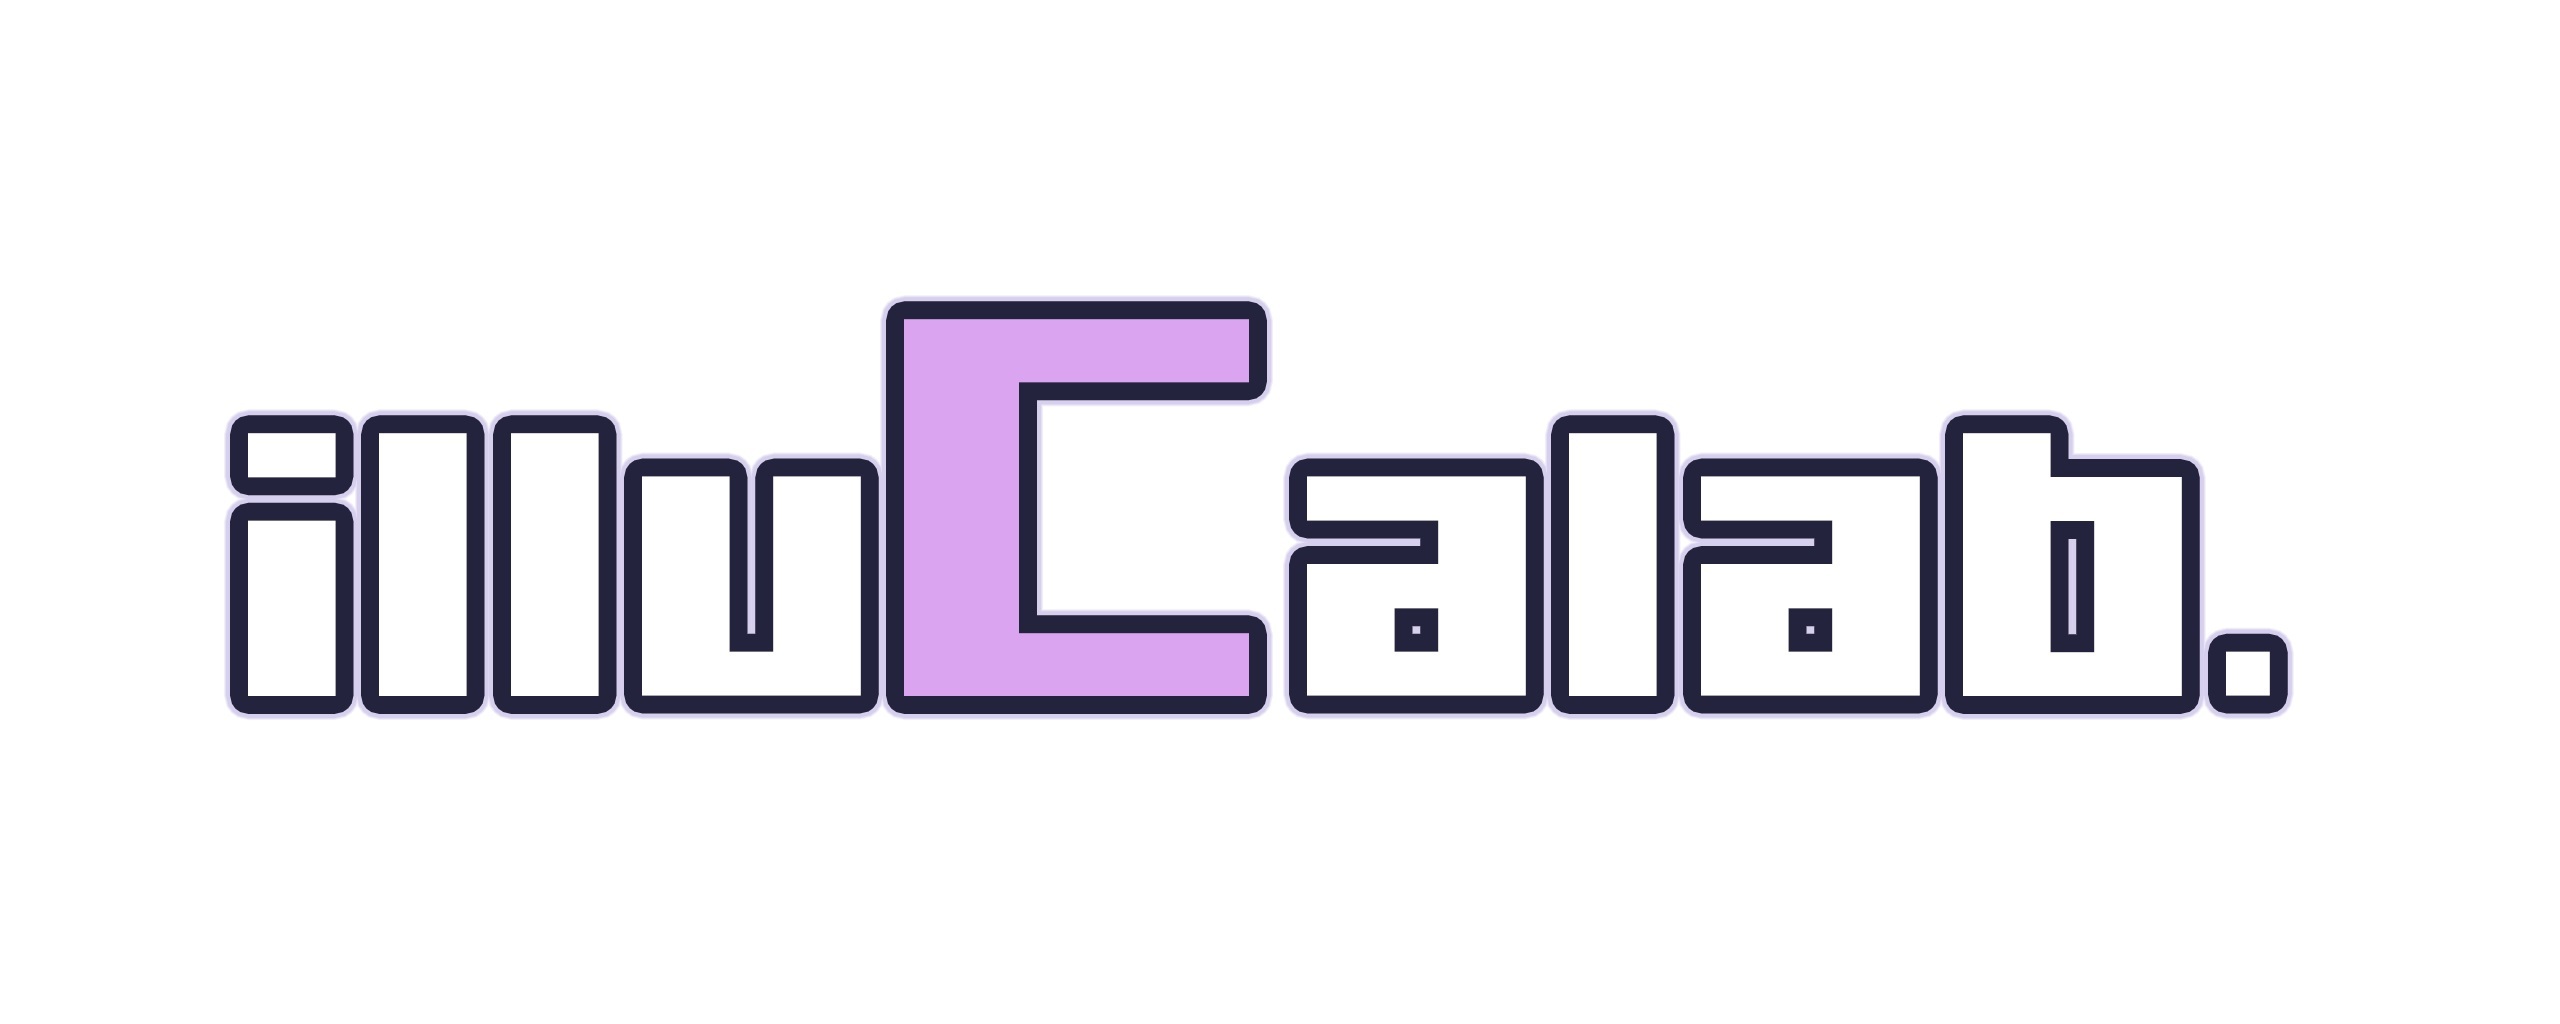 デッキ成長型ボードゲーム ハートオブクラウン Pc版がゲームプラットフォーム Steam で12月12日にリリース カードの組み合わせで展開 戦略が大きく変化 Illucalab のプレスリリース